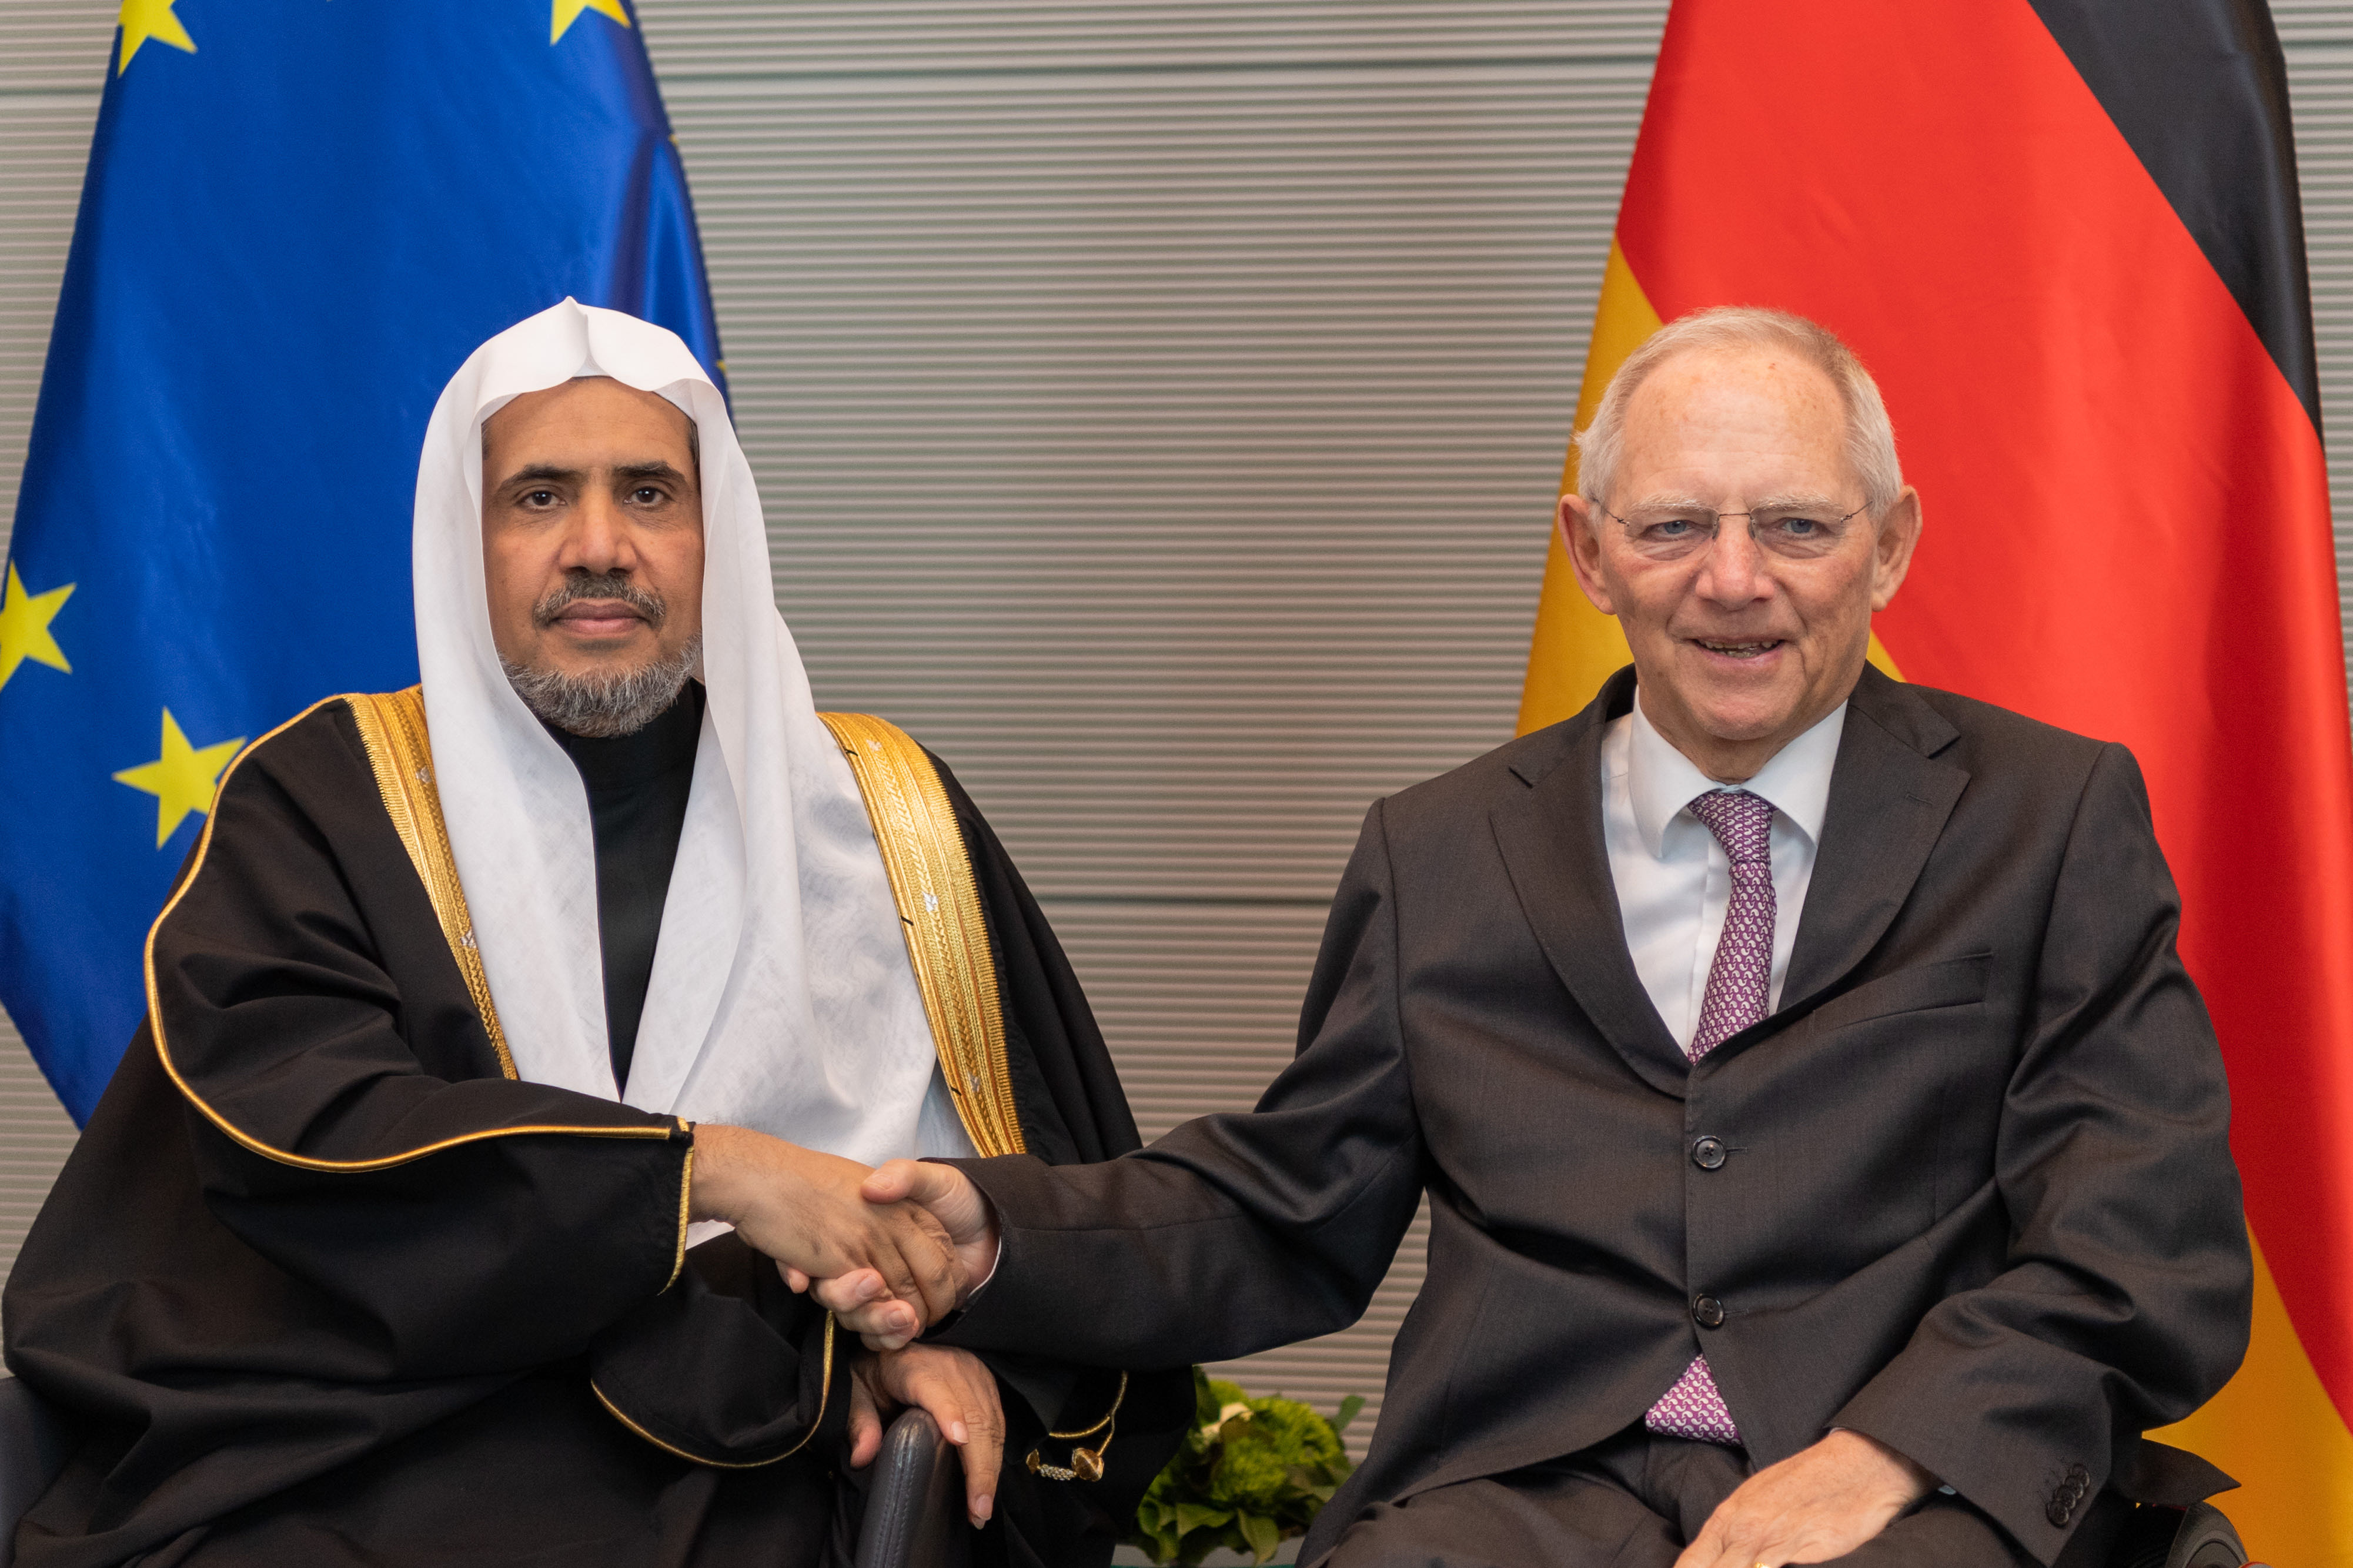 le Secrétaire général, Mohammad Alissa a rencontré le Président du Parlement allemand, M. Wolfgang Schäuble.